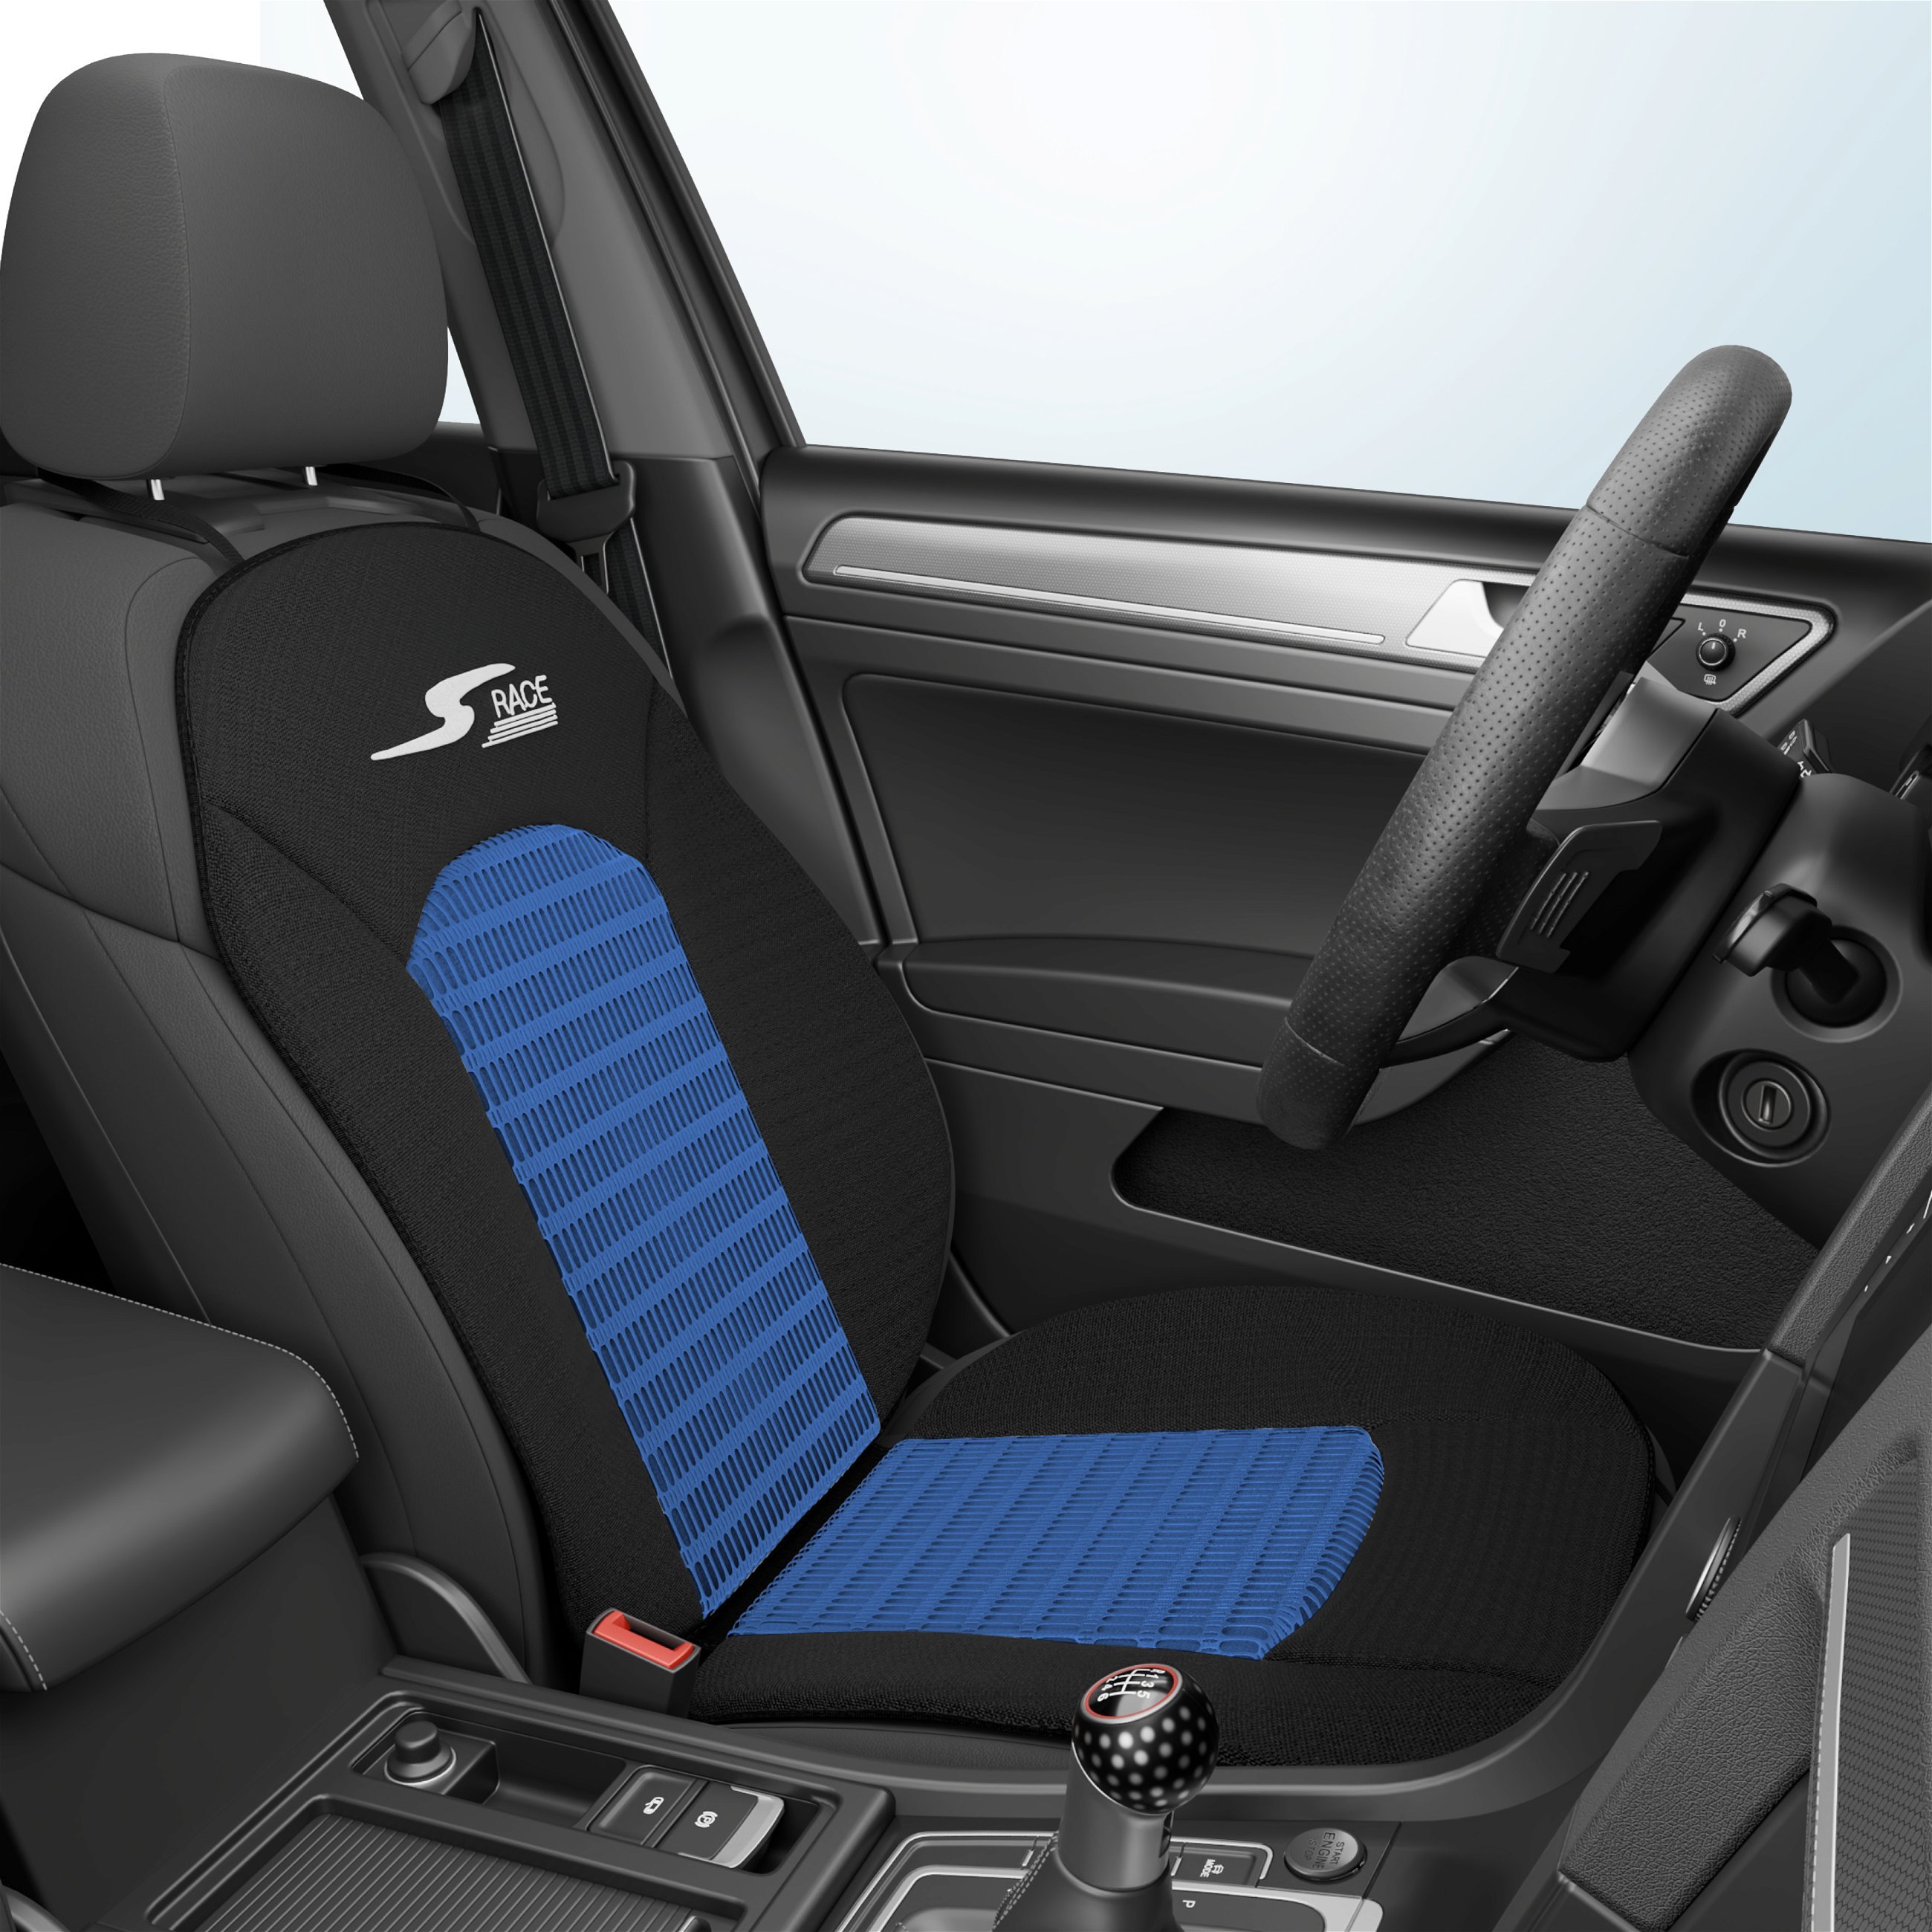 PKW Sitzauflage S-Race, Auto-Sitzaufleger blau